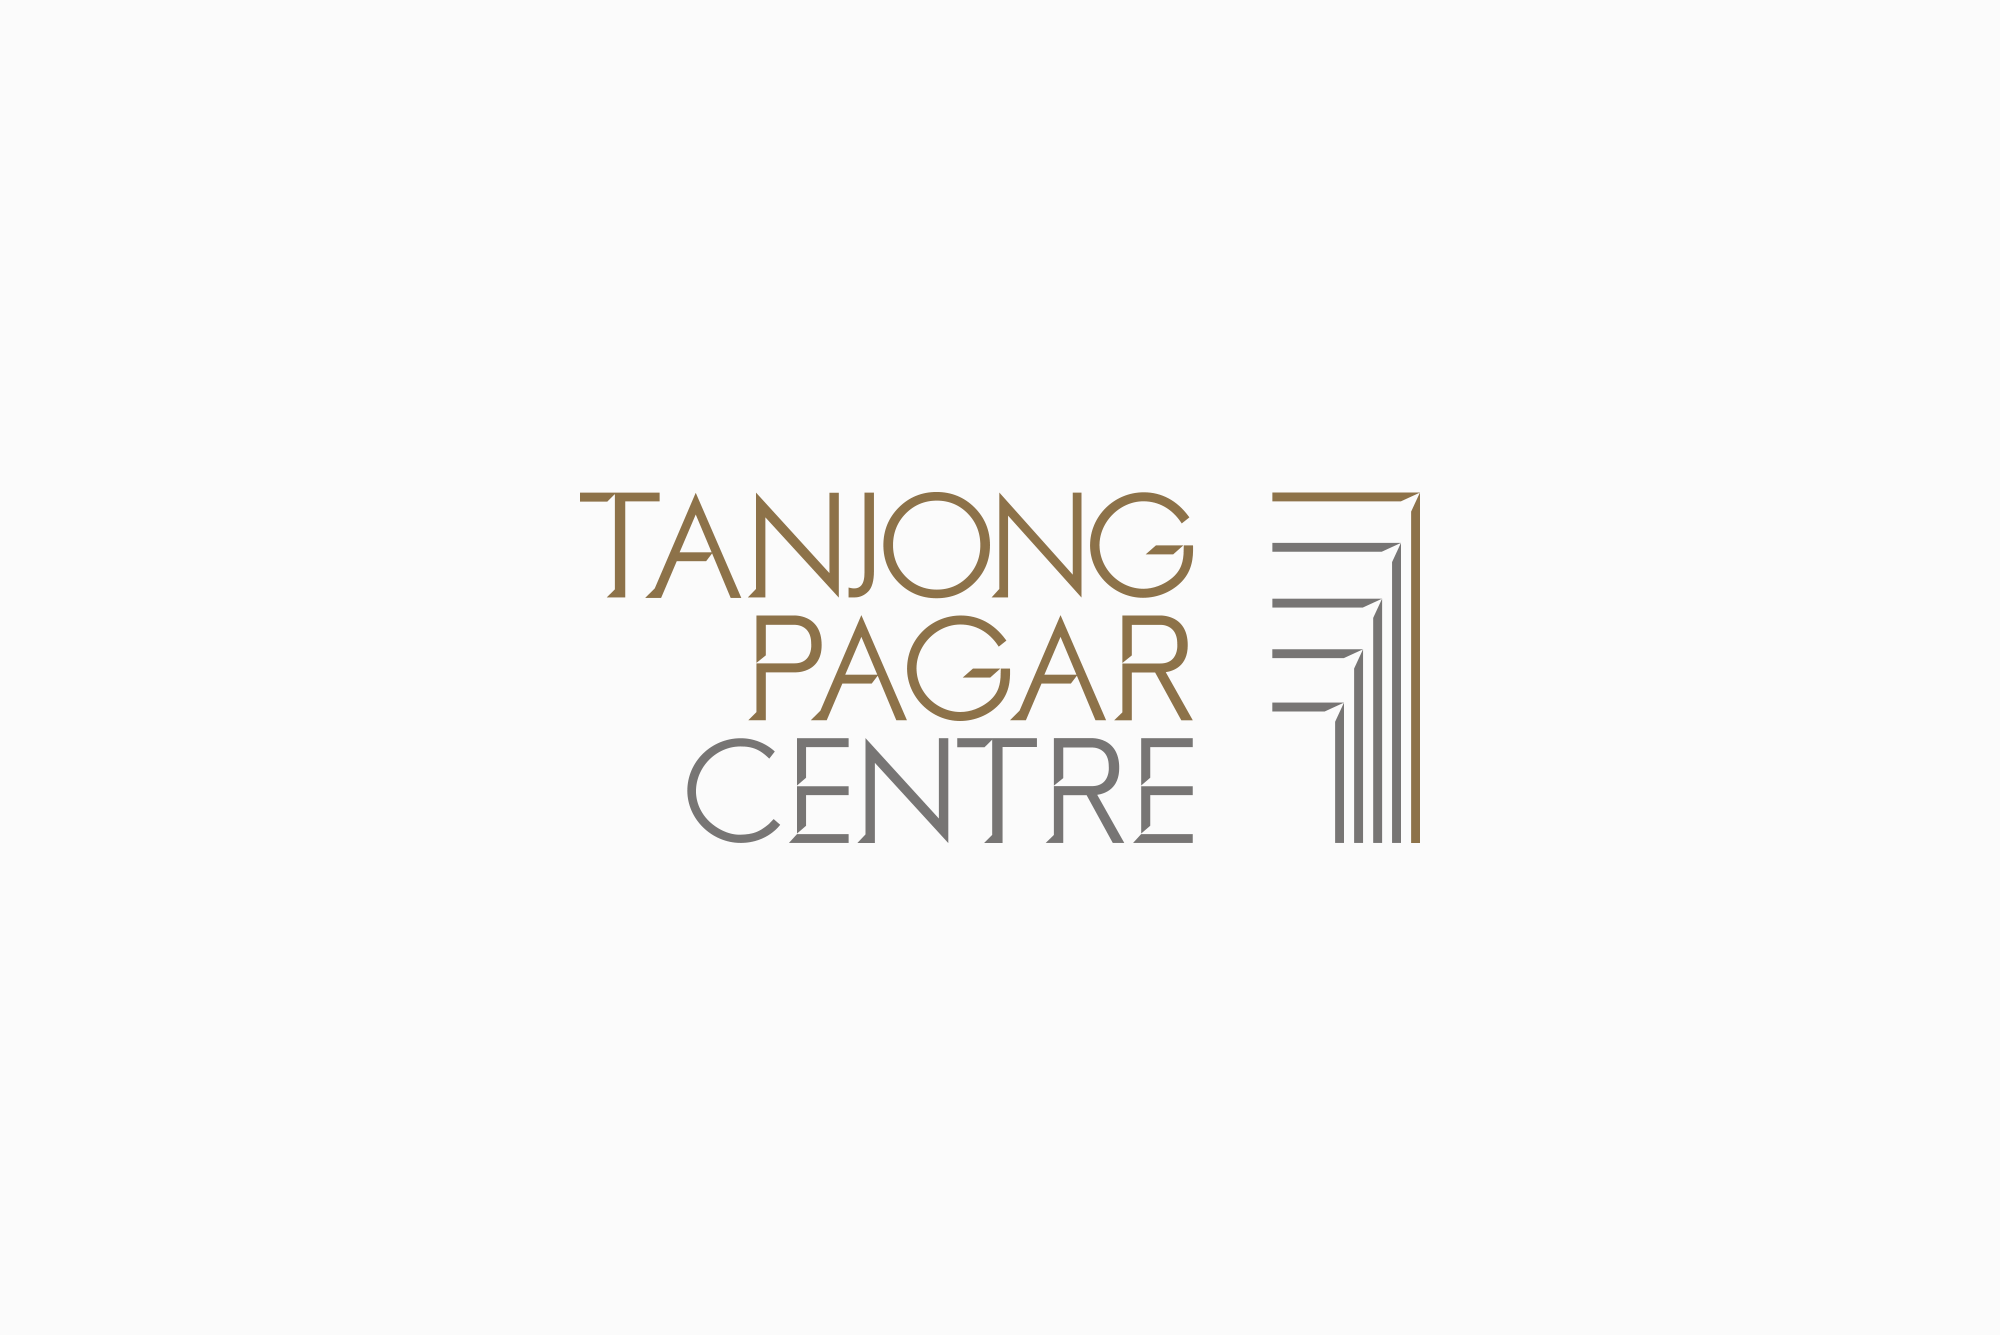 Tanjong Pagar Centre